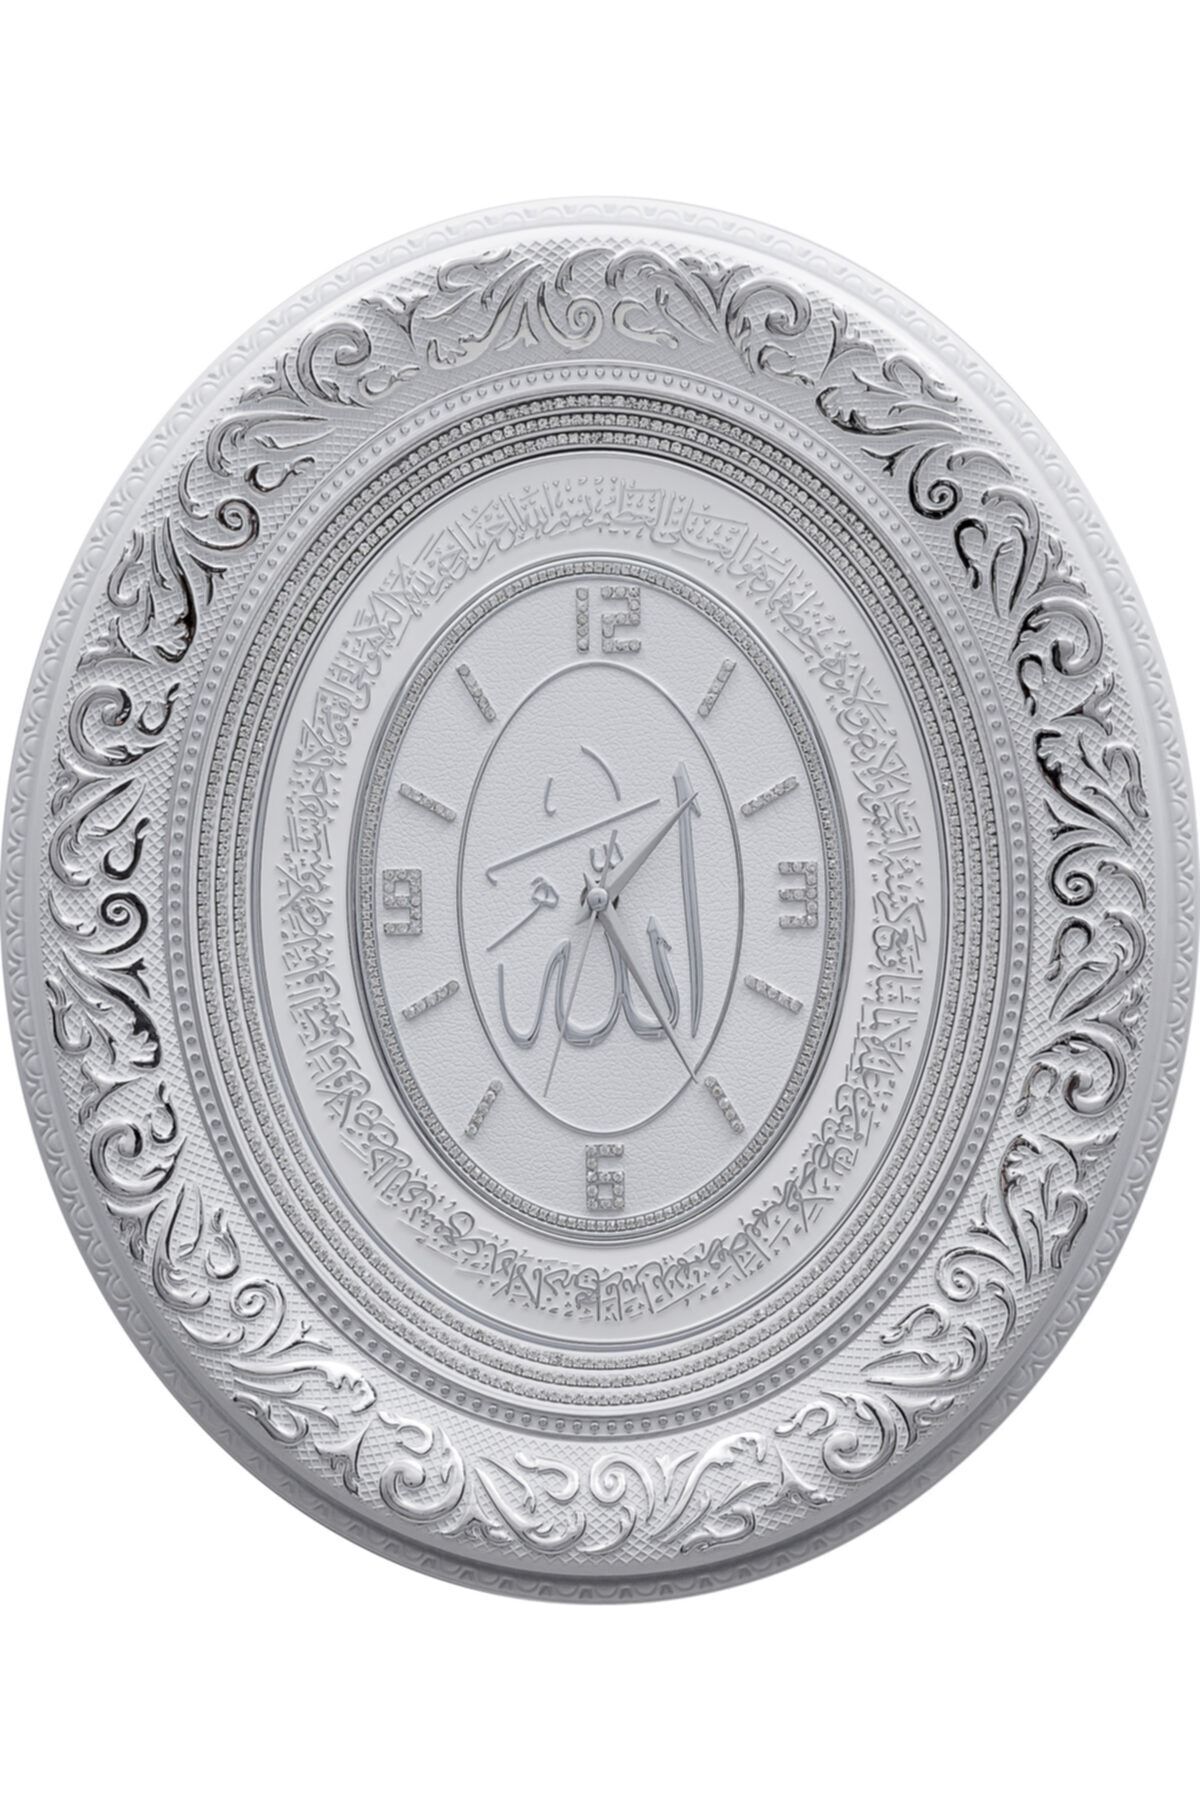 GÜNEŞ HEDİYELİK Oval Saat Ayetli Ayet-el Kürsi - Beyaz Gümüş